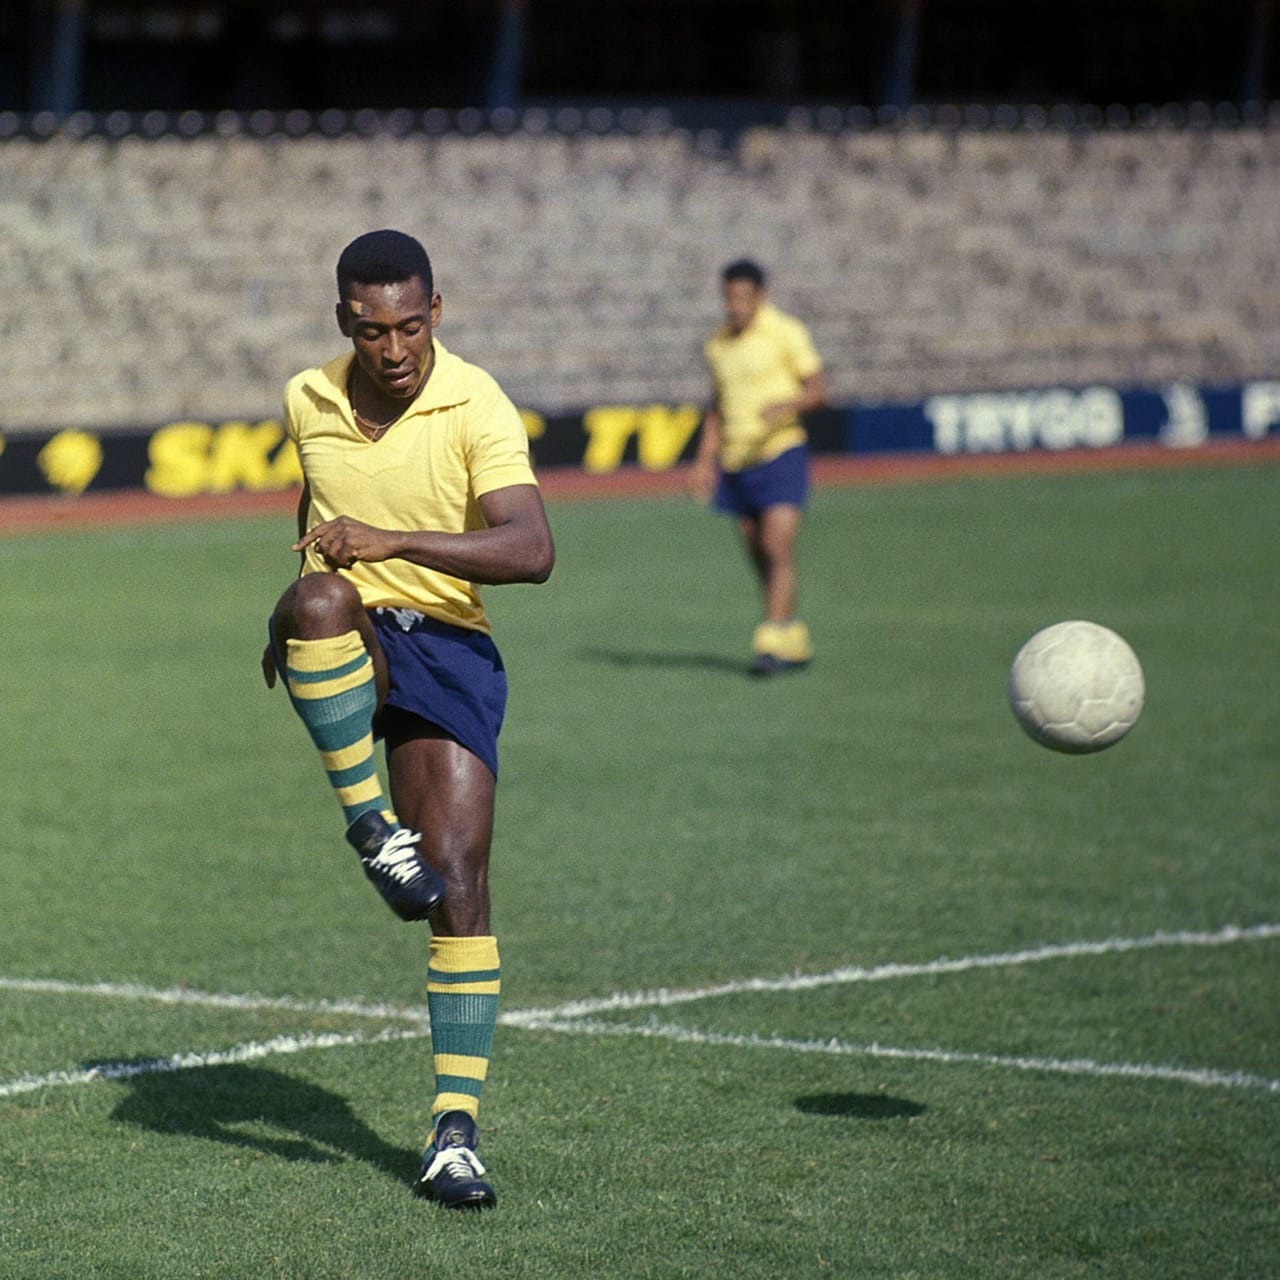 world 1966: All against Pele's Brazil